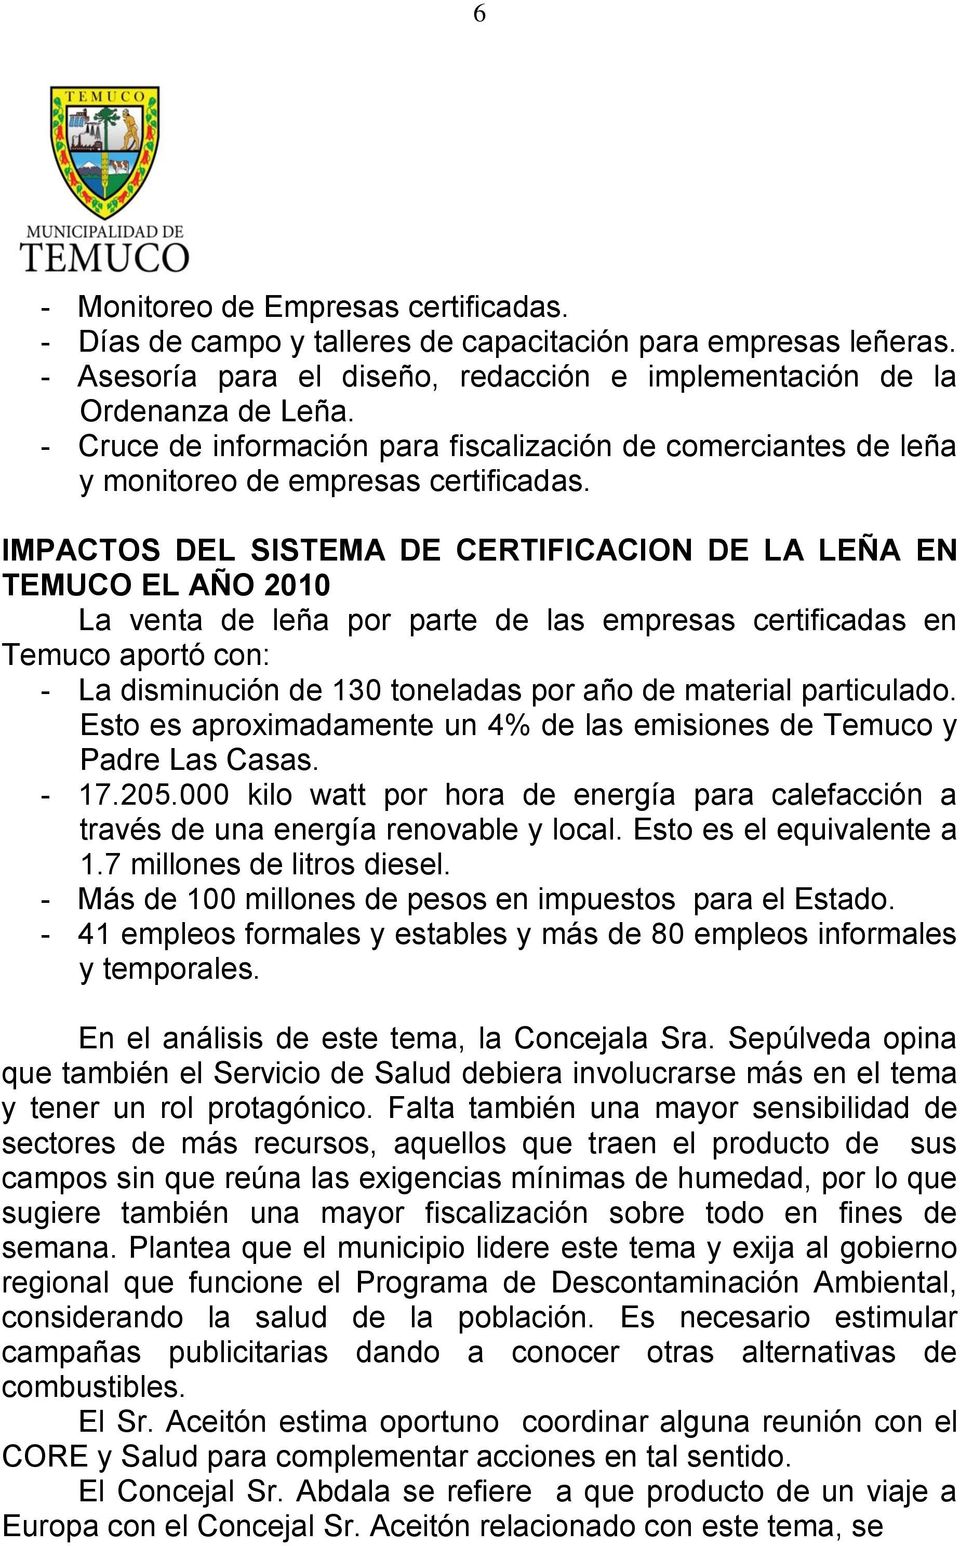 IMPACTOS DEL SISTEMA DE CERTIFICACION DE LA LEÑA EN TEMUCO EL AÑO 2010 La venta de leña por parte de las empresas certificadas en Temuco aportó con: - La disminución de 130 toneladas por año de